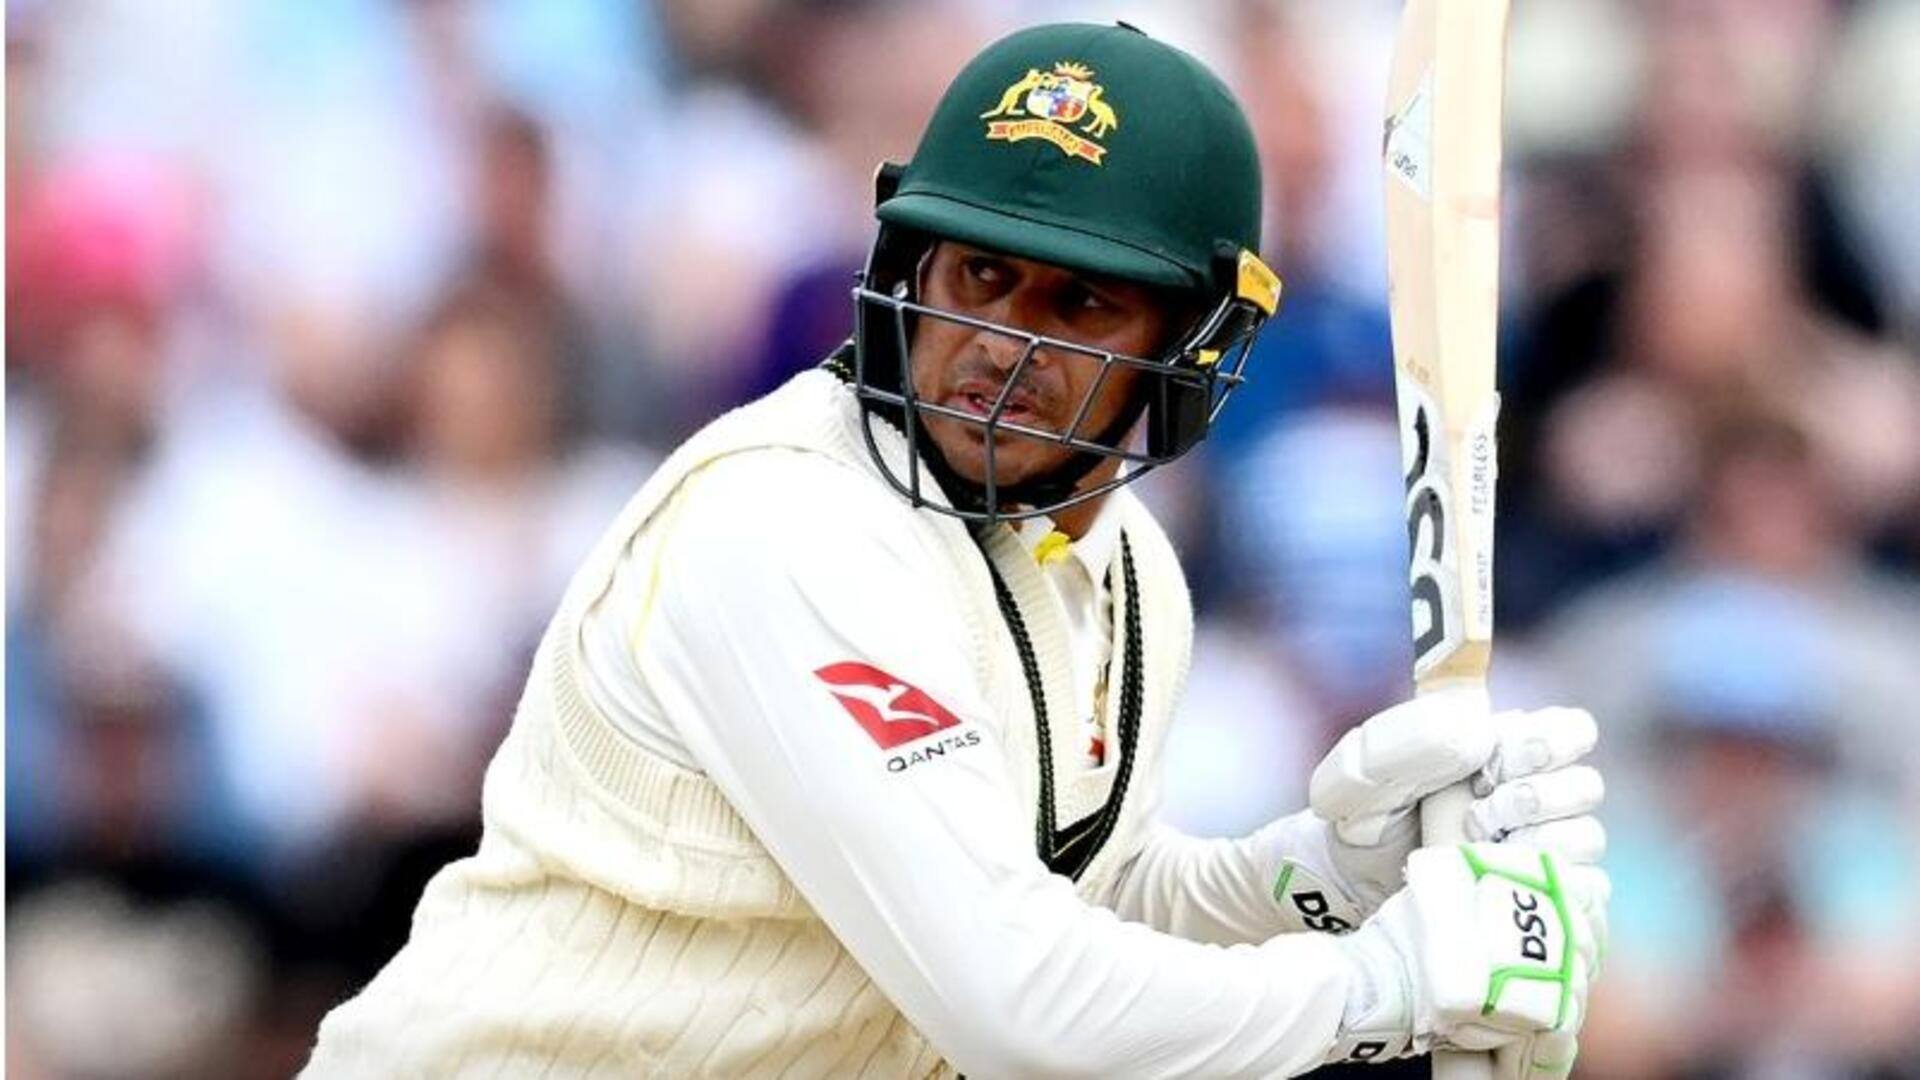 टेस्ट क्रिकेट में पांचों दिन बल्लेबाजी करने वाले दूसरे ऑस्ट्रेलियाई बल्लेबाज बने उस्मान ख्वाजा